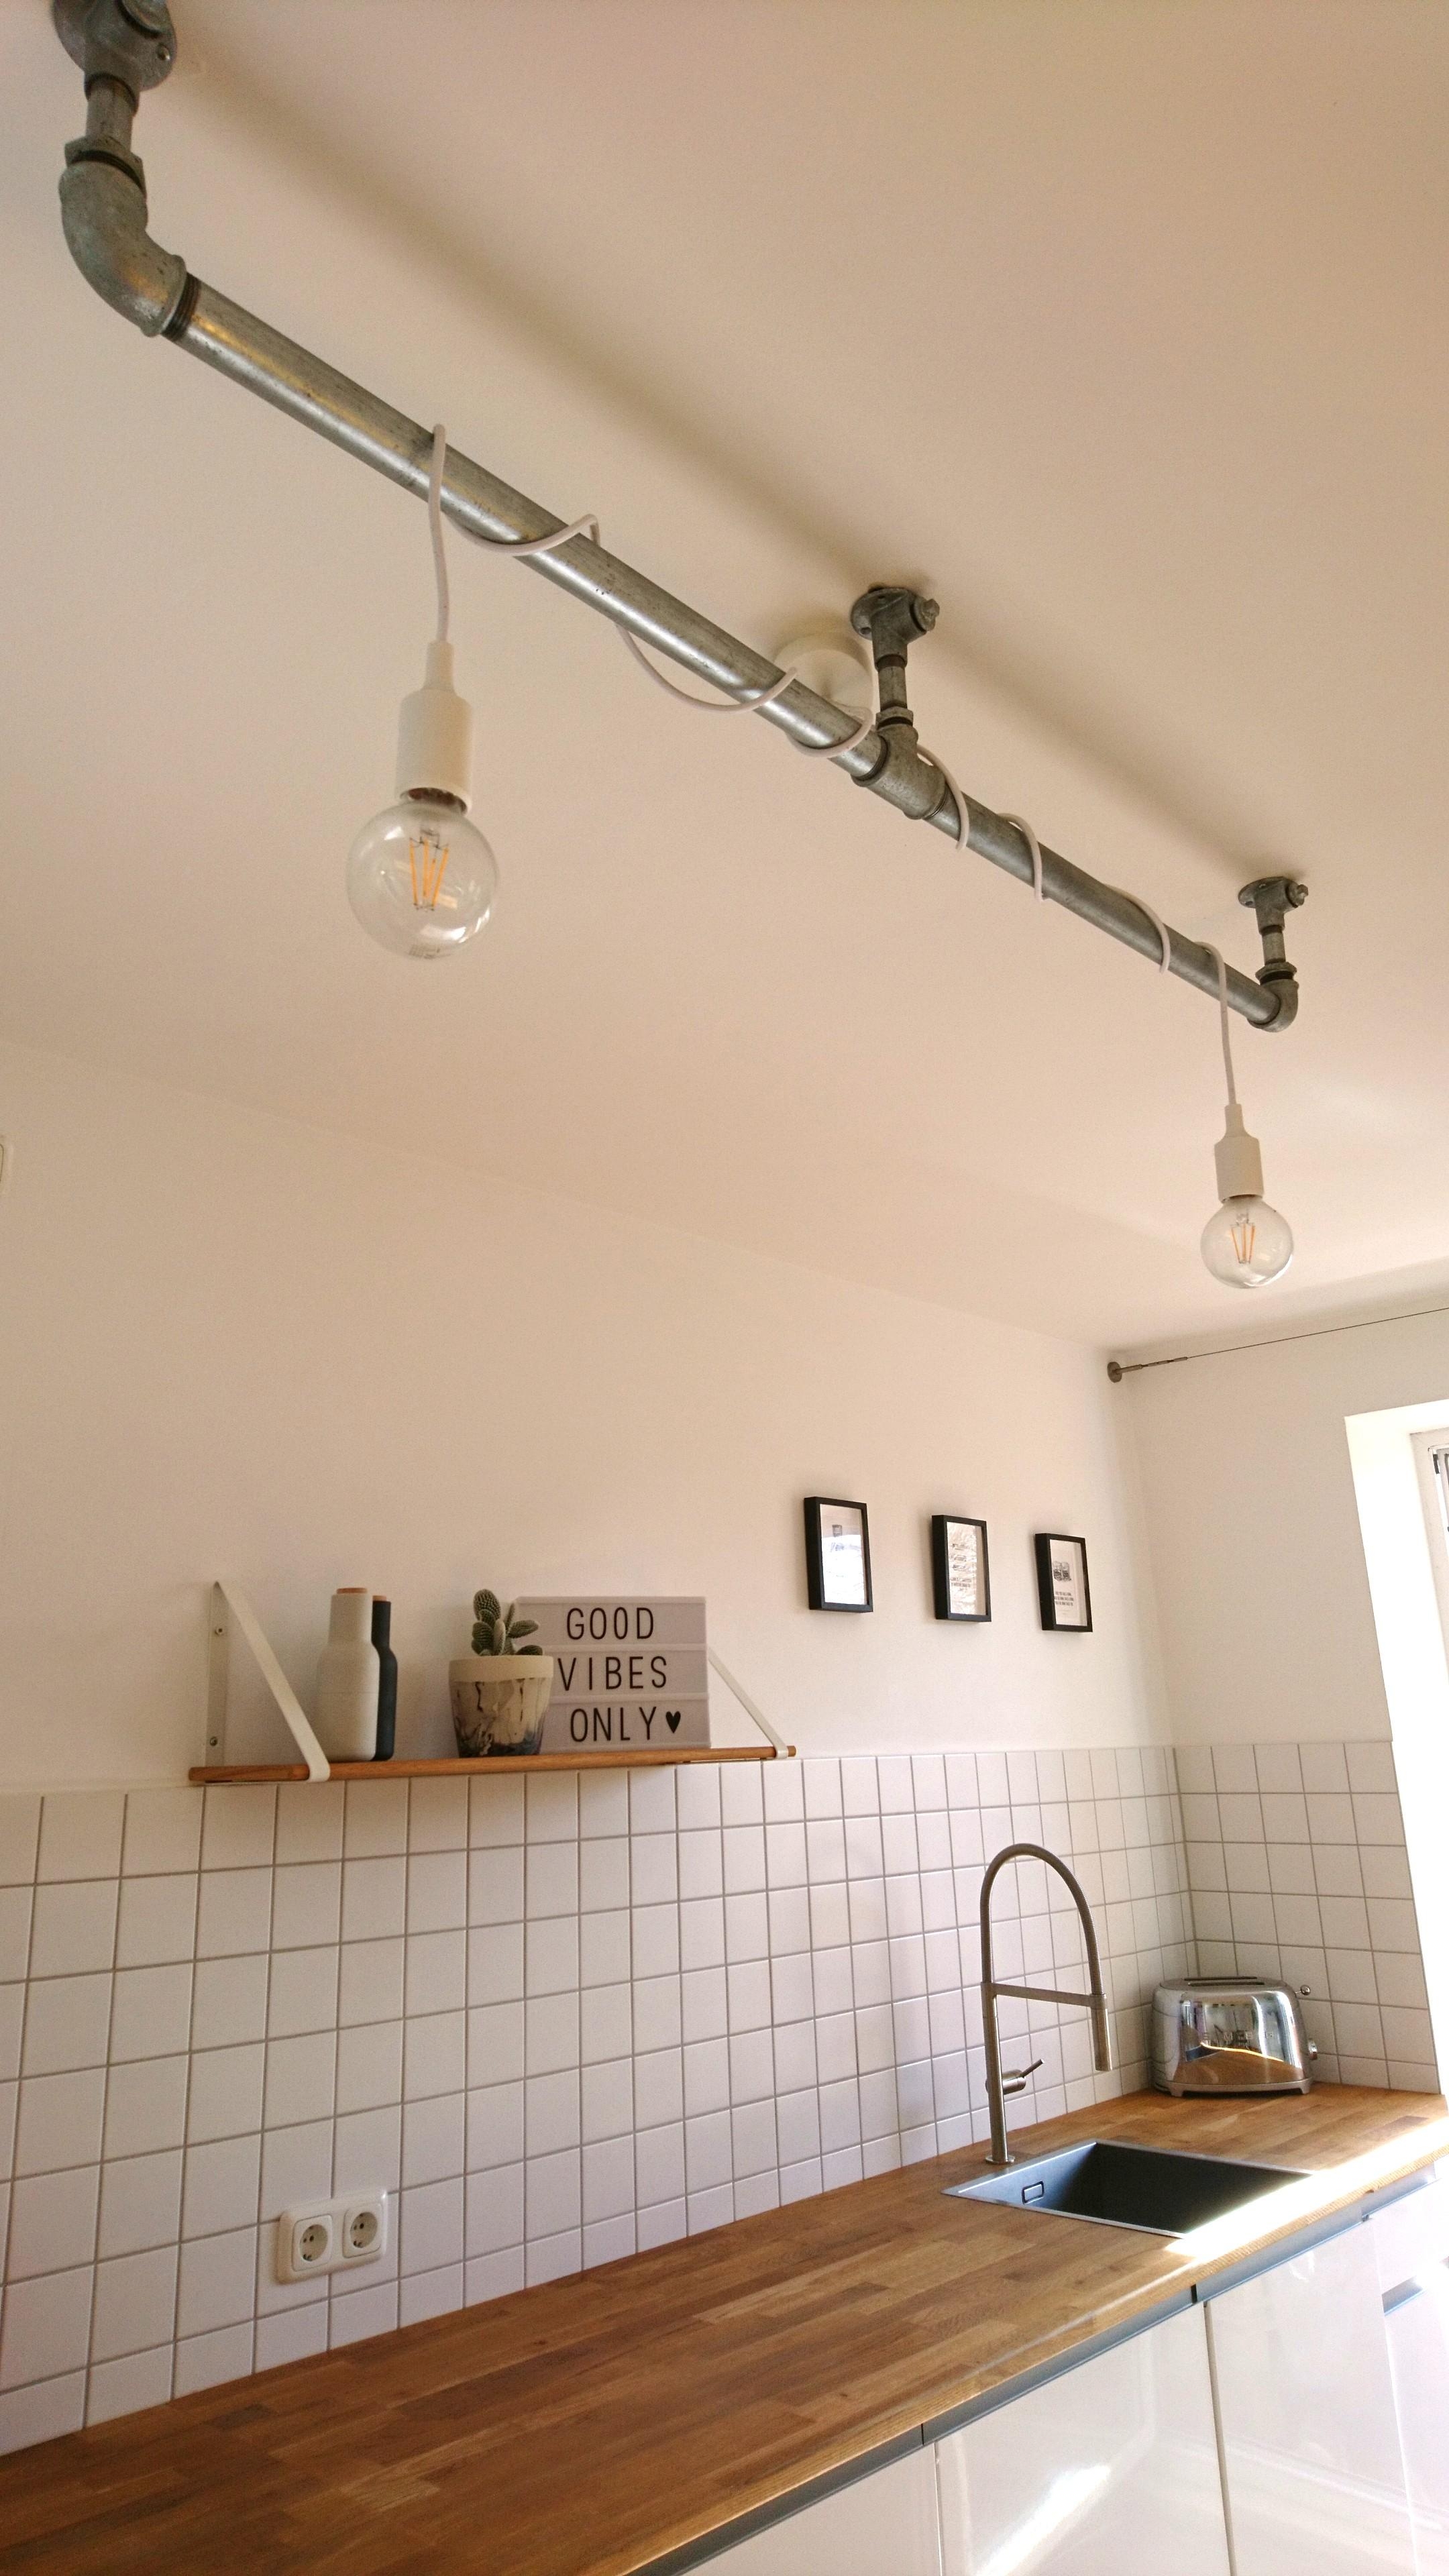 Wir lieben unsere selbstgebaute Küchenlampe! ❤️☀️💡
#living #home #küche #diylampe #weißeküche #diy #lampe